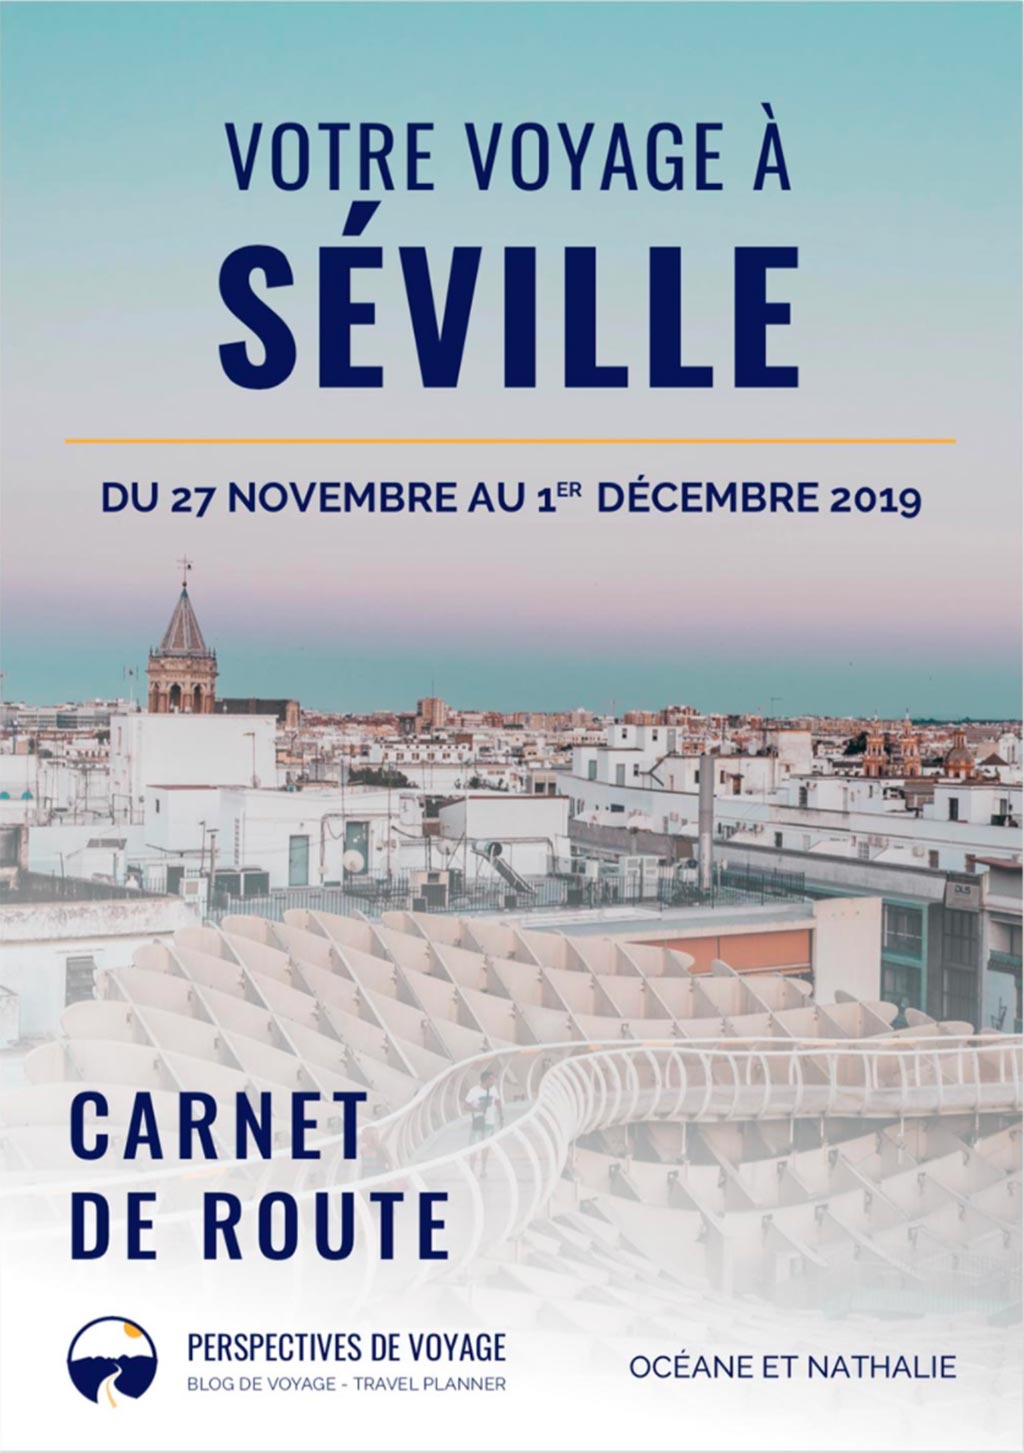 Travel planner, bonne idee. Carnet de route Seville